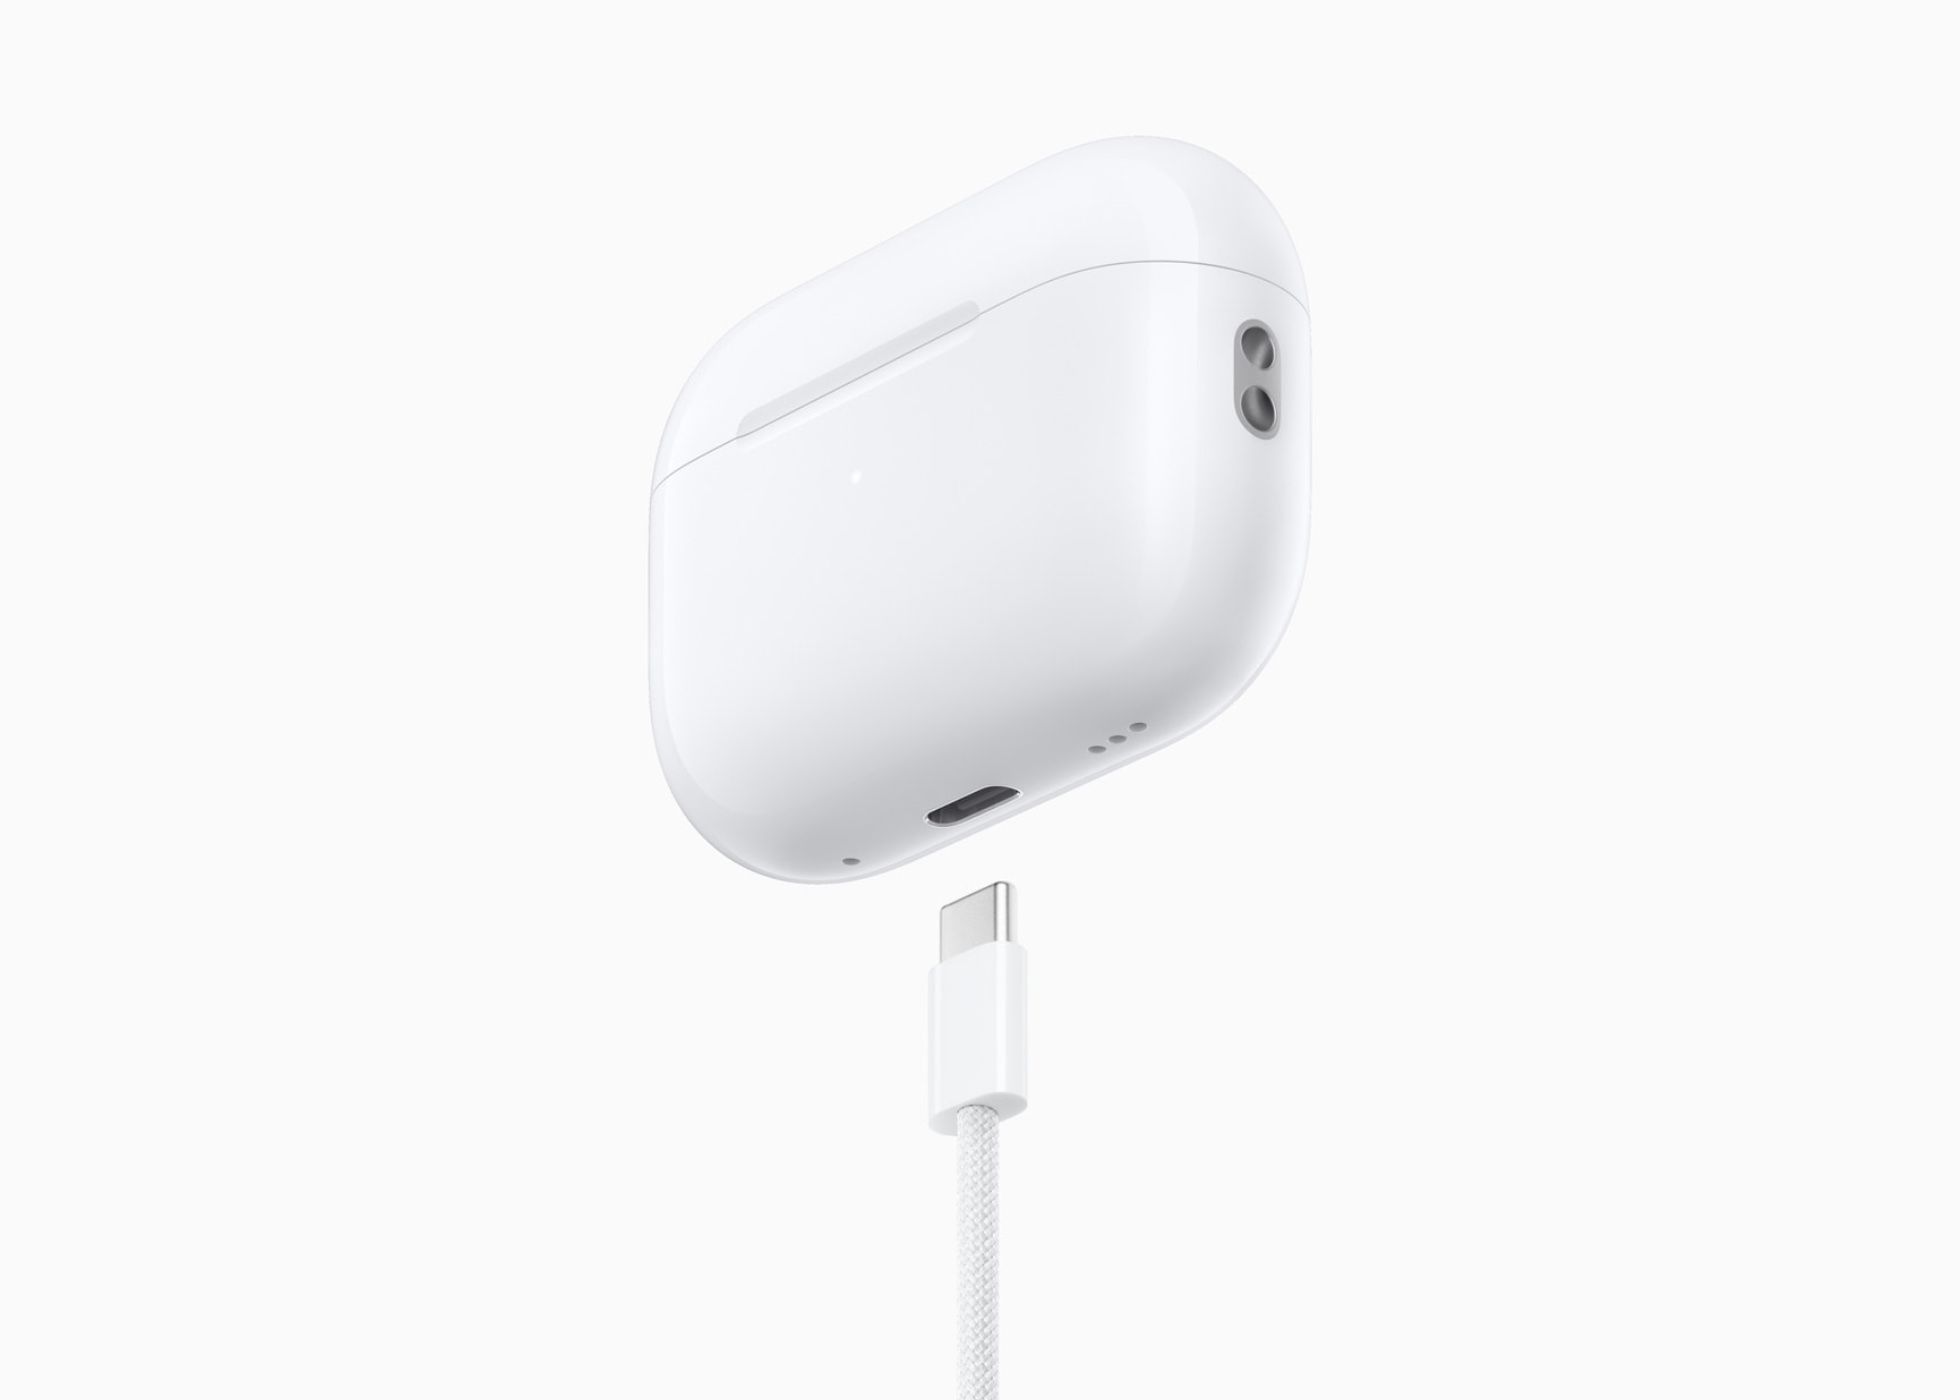 Apple AirPods Pro: Novo modelo com USB-C apresentado oficialmente post image